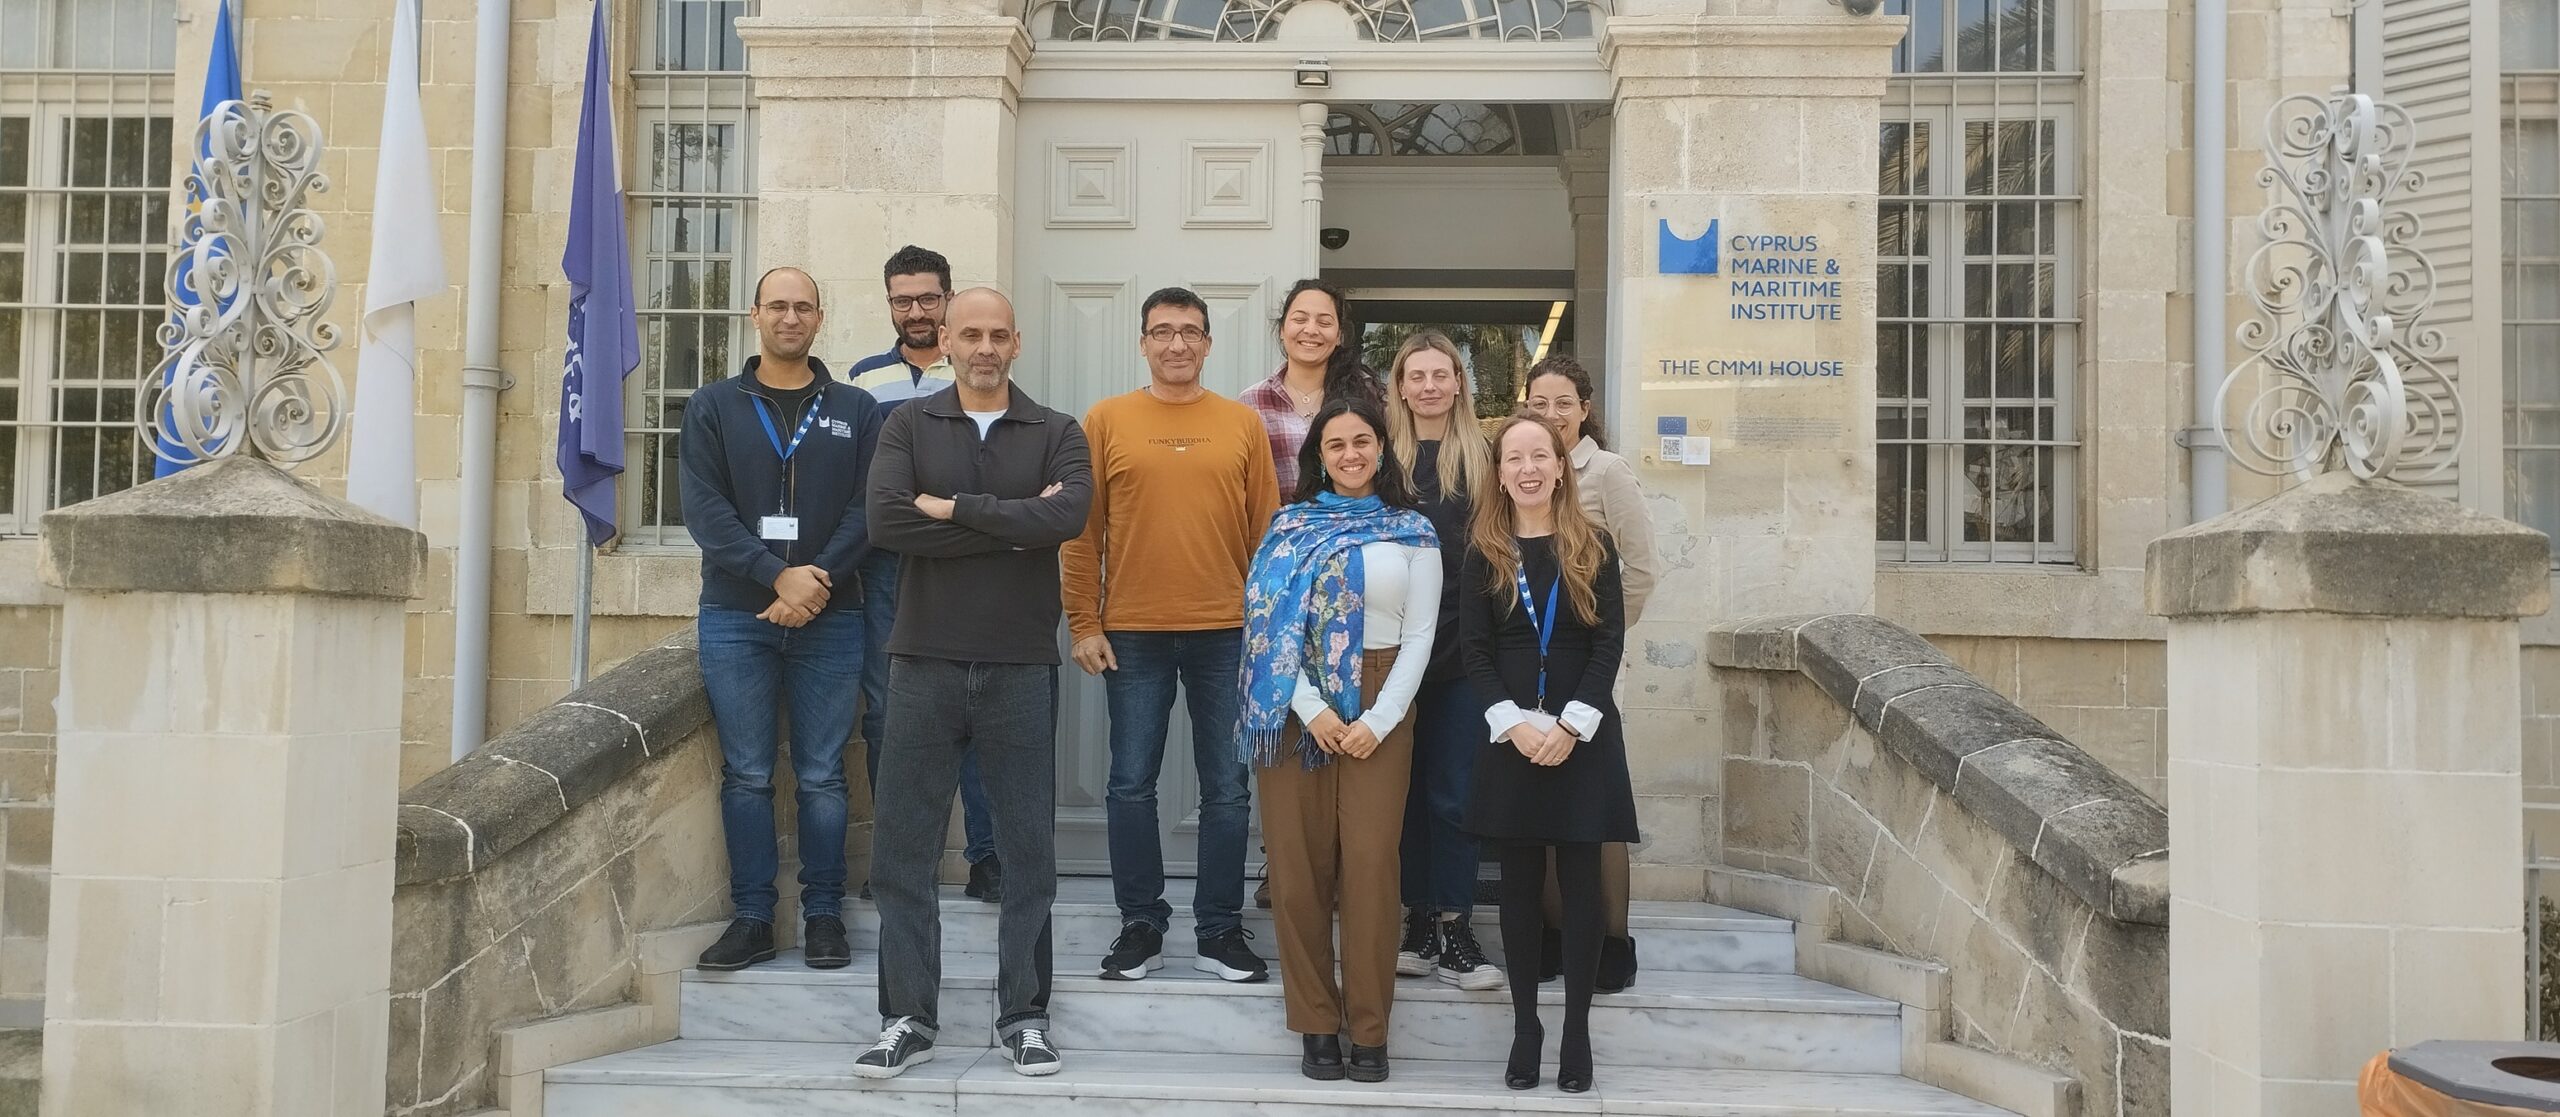 Ομάδα επιστημόνων του Ελληνικού Κέντρου Θαλάσσιων Ερευνών (HCMR) & του Πανεπιστημίου Θεσσαλίας στο Cyprus Marine and Maritime Institute στη Λάρνακα